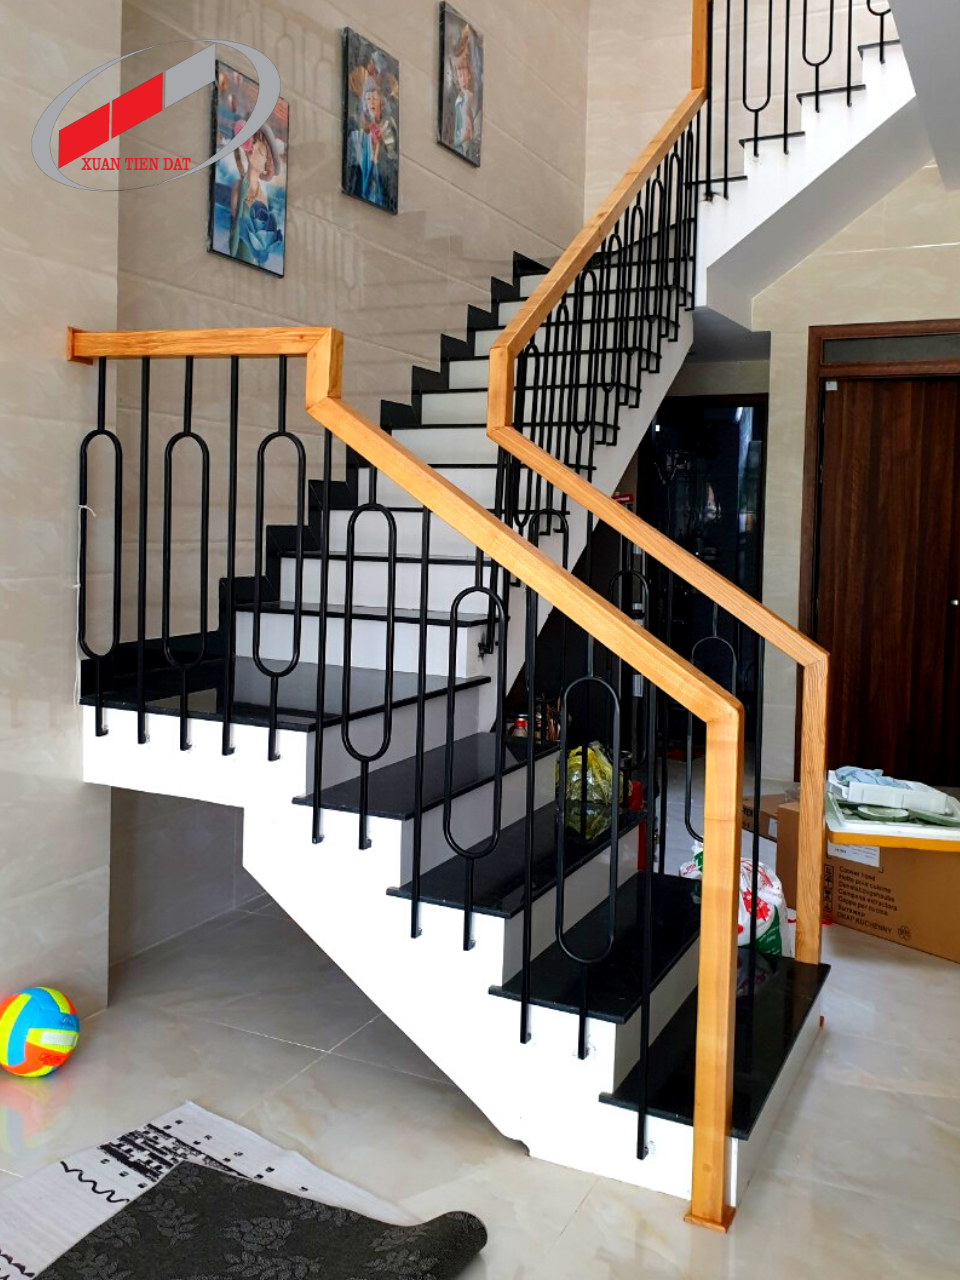 Lan can cầu thang: Lan can cầu thang không chỉ là một sản phẩm cần thiết mà còn là một điểm nhấn tạo nên phong cách và nét độc đáo cho ngôi nhà của bạn. Hãy thưởng thức những ảnh về lan can cầu thang đẹp, tinh xảo và được thiết kế độc quyền để trang trí cho ngôi nhà của bạn.